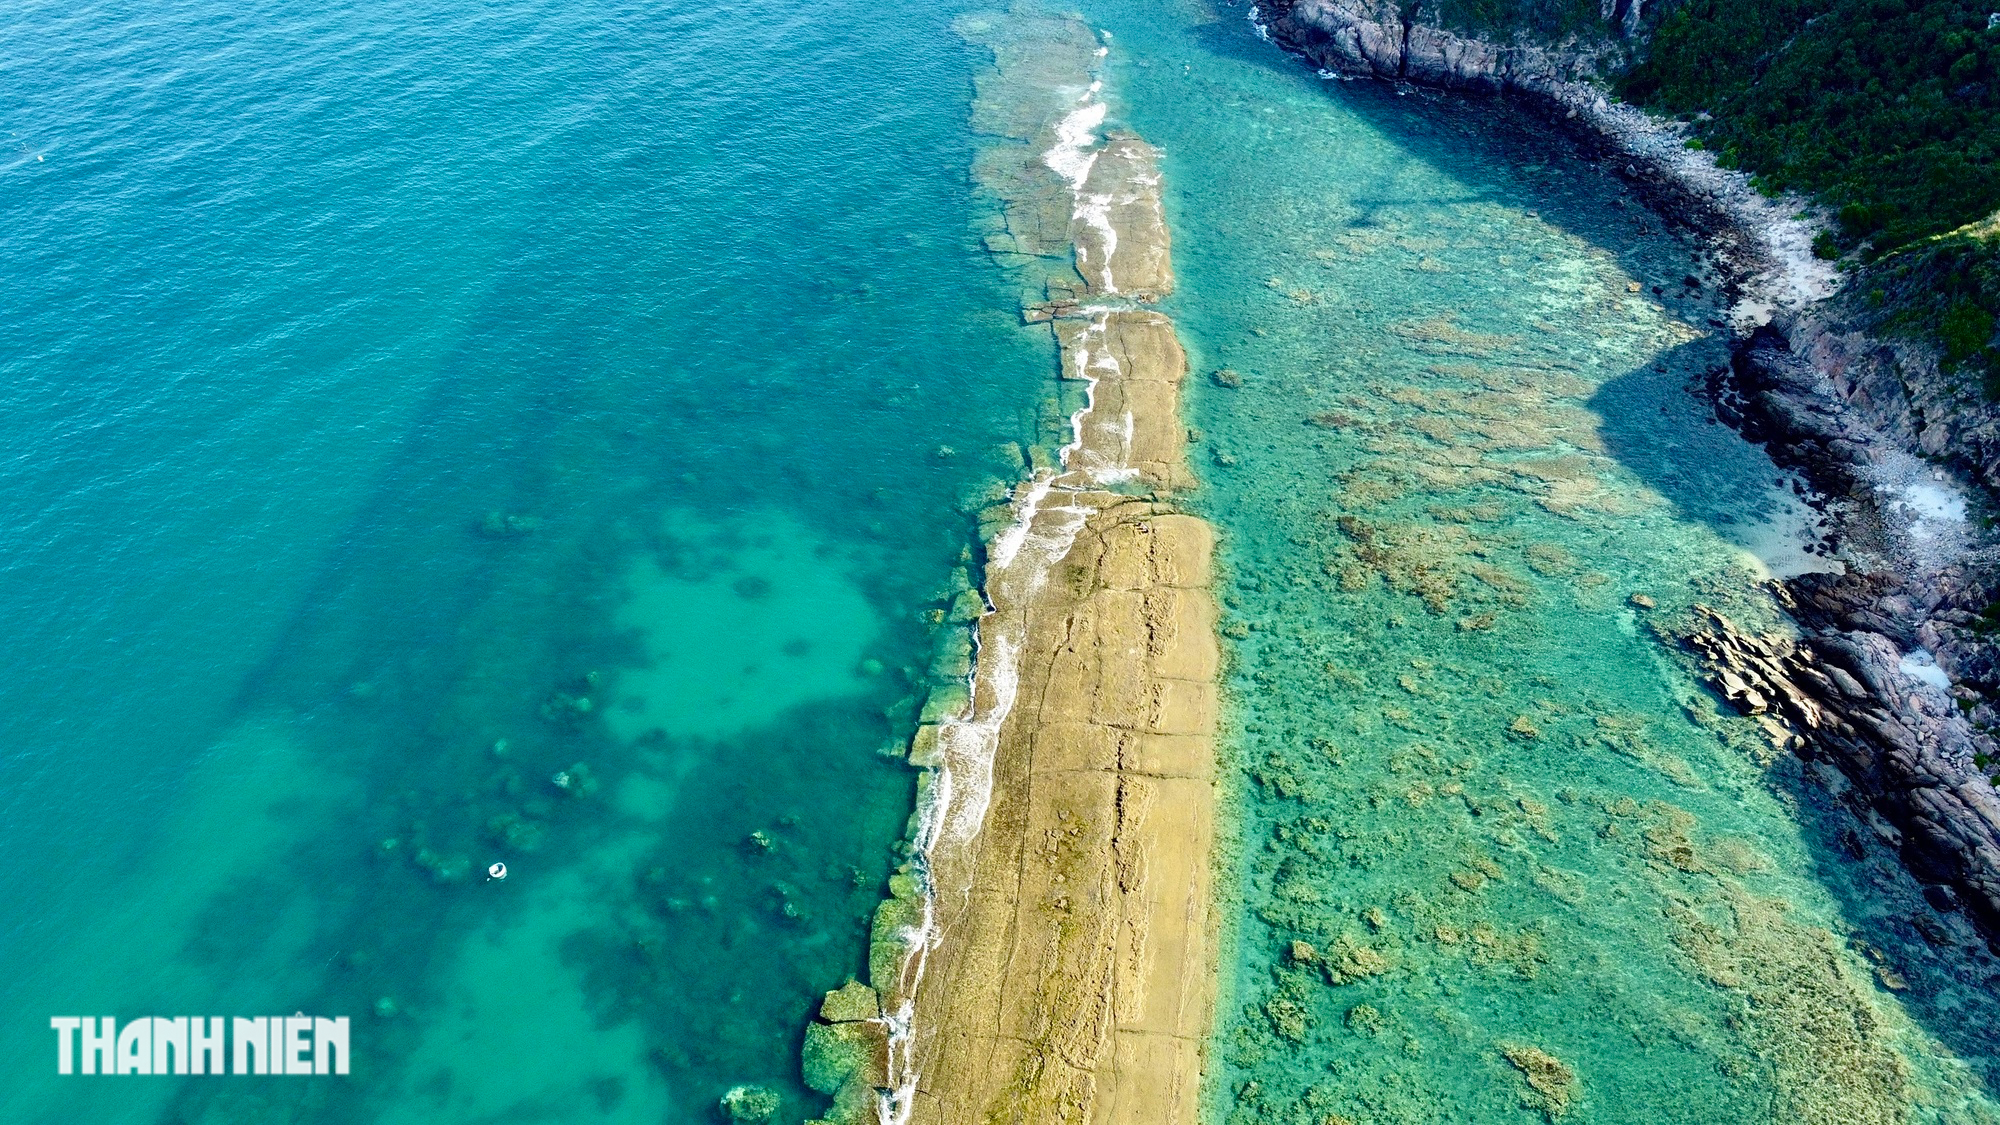 Tường thành cổ bí ẩn dưới đáy biển Nhơn Hải - Ảnh 6.